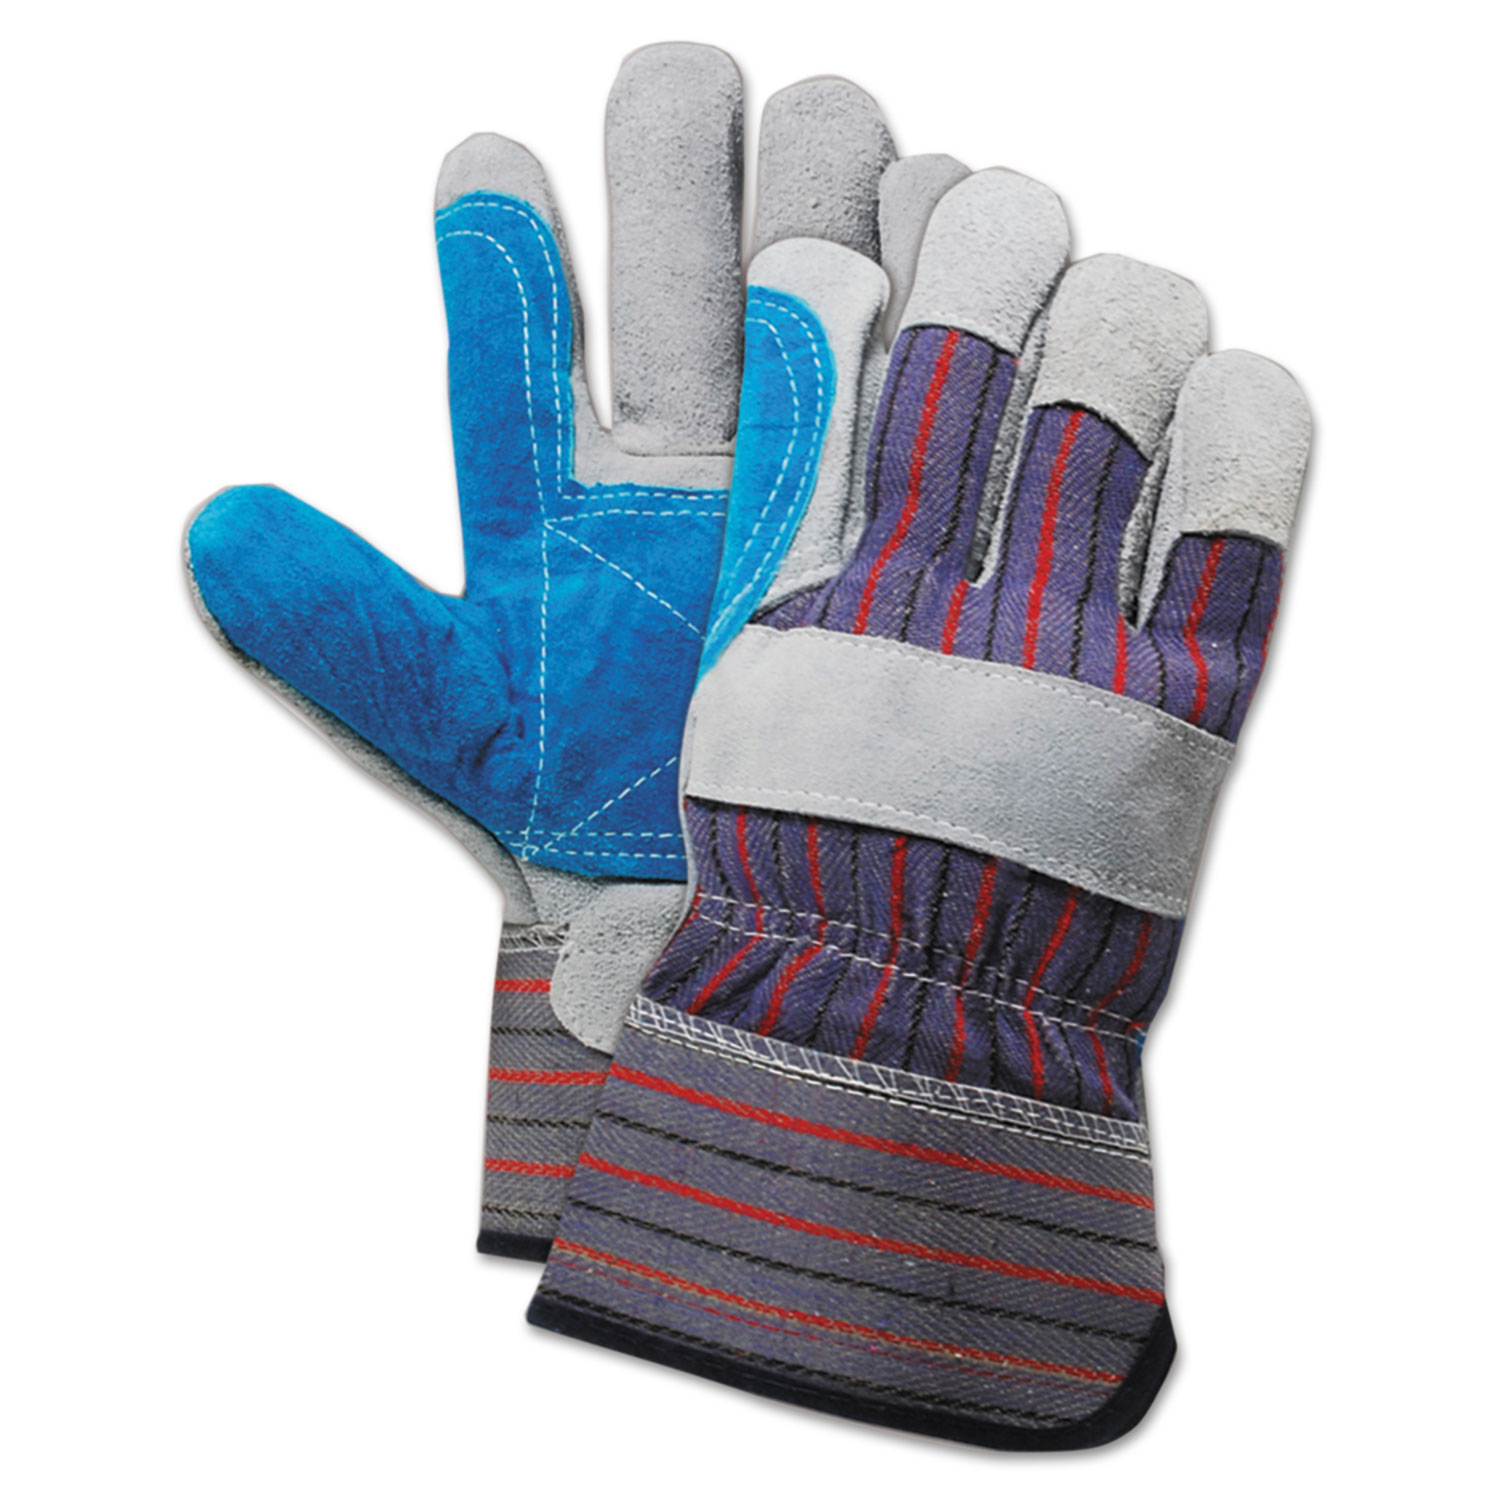 Cow Split Leather Double Palm Gloves, Gray/Blue, Large, 1 Dozen